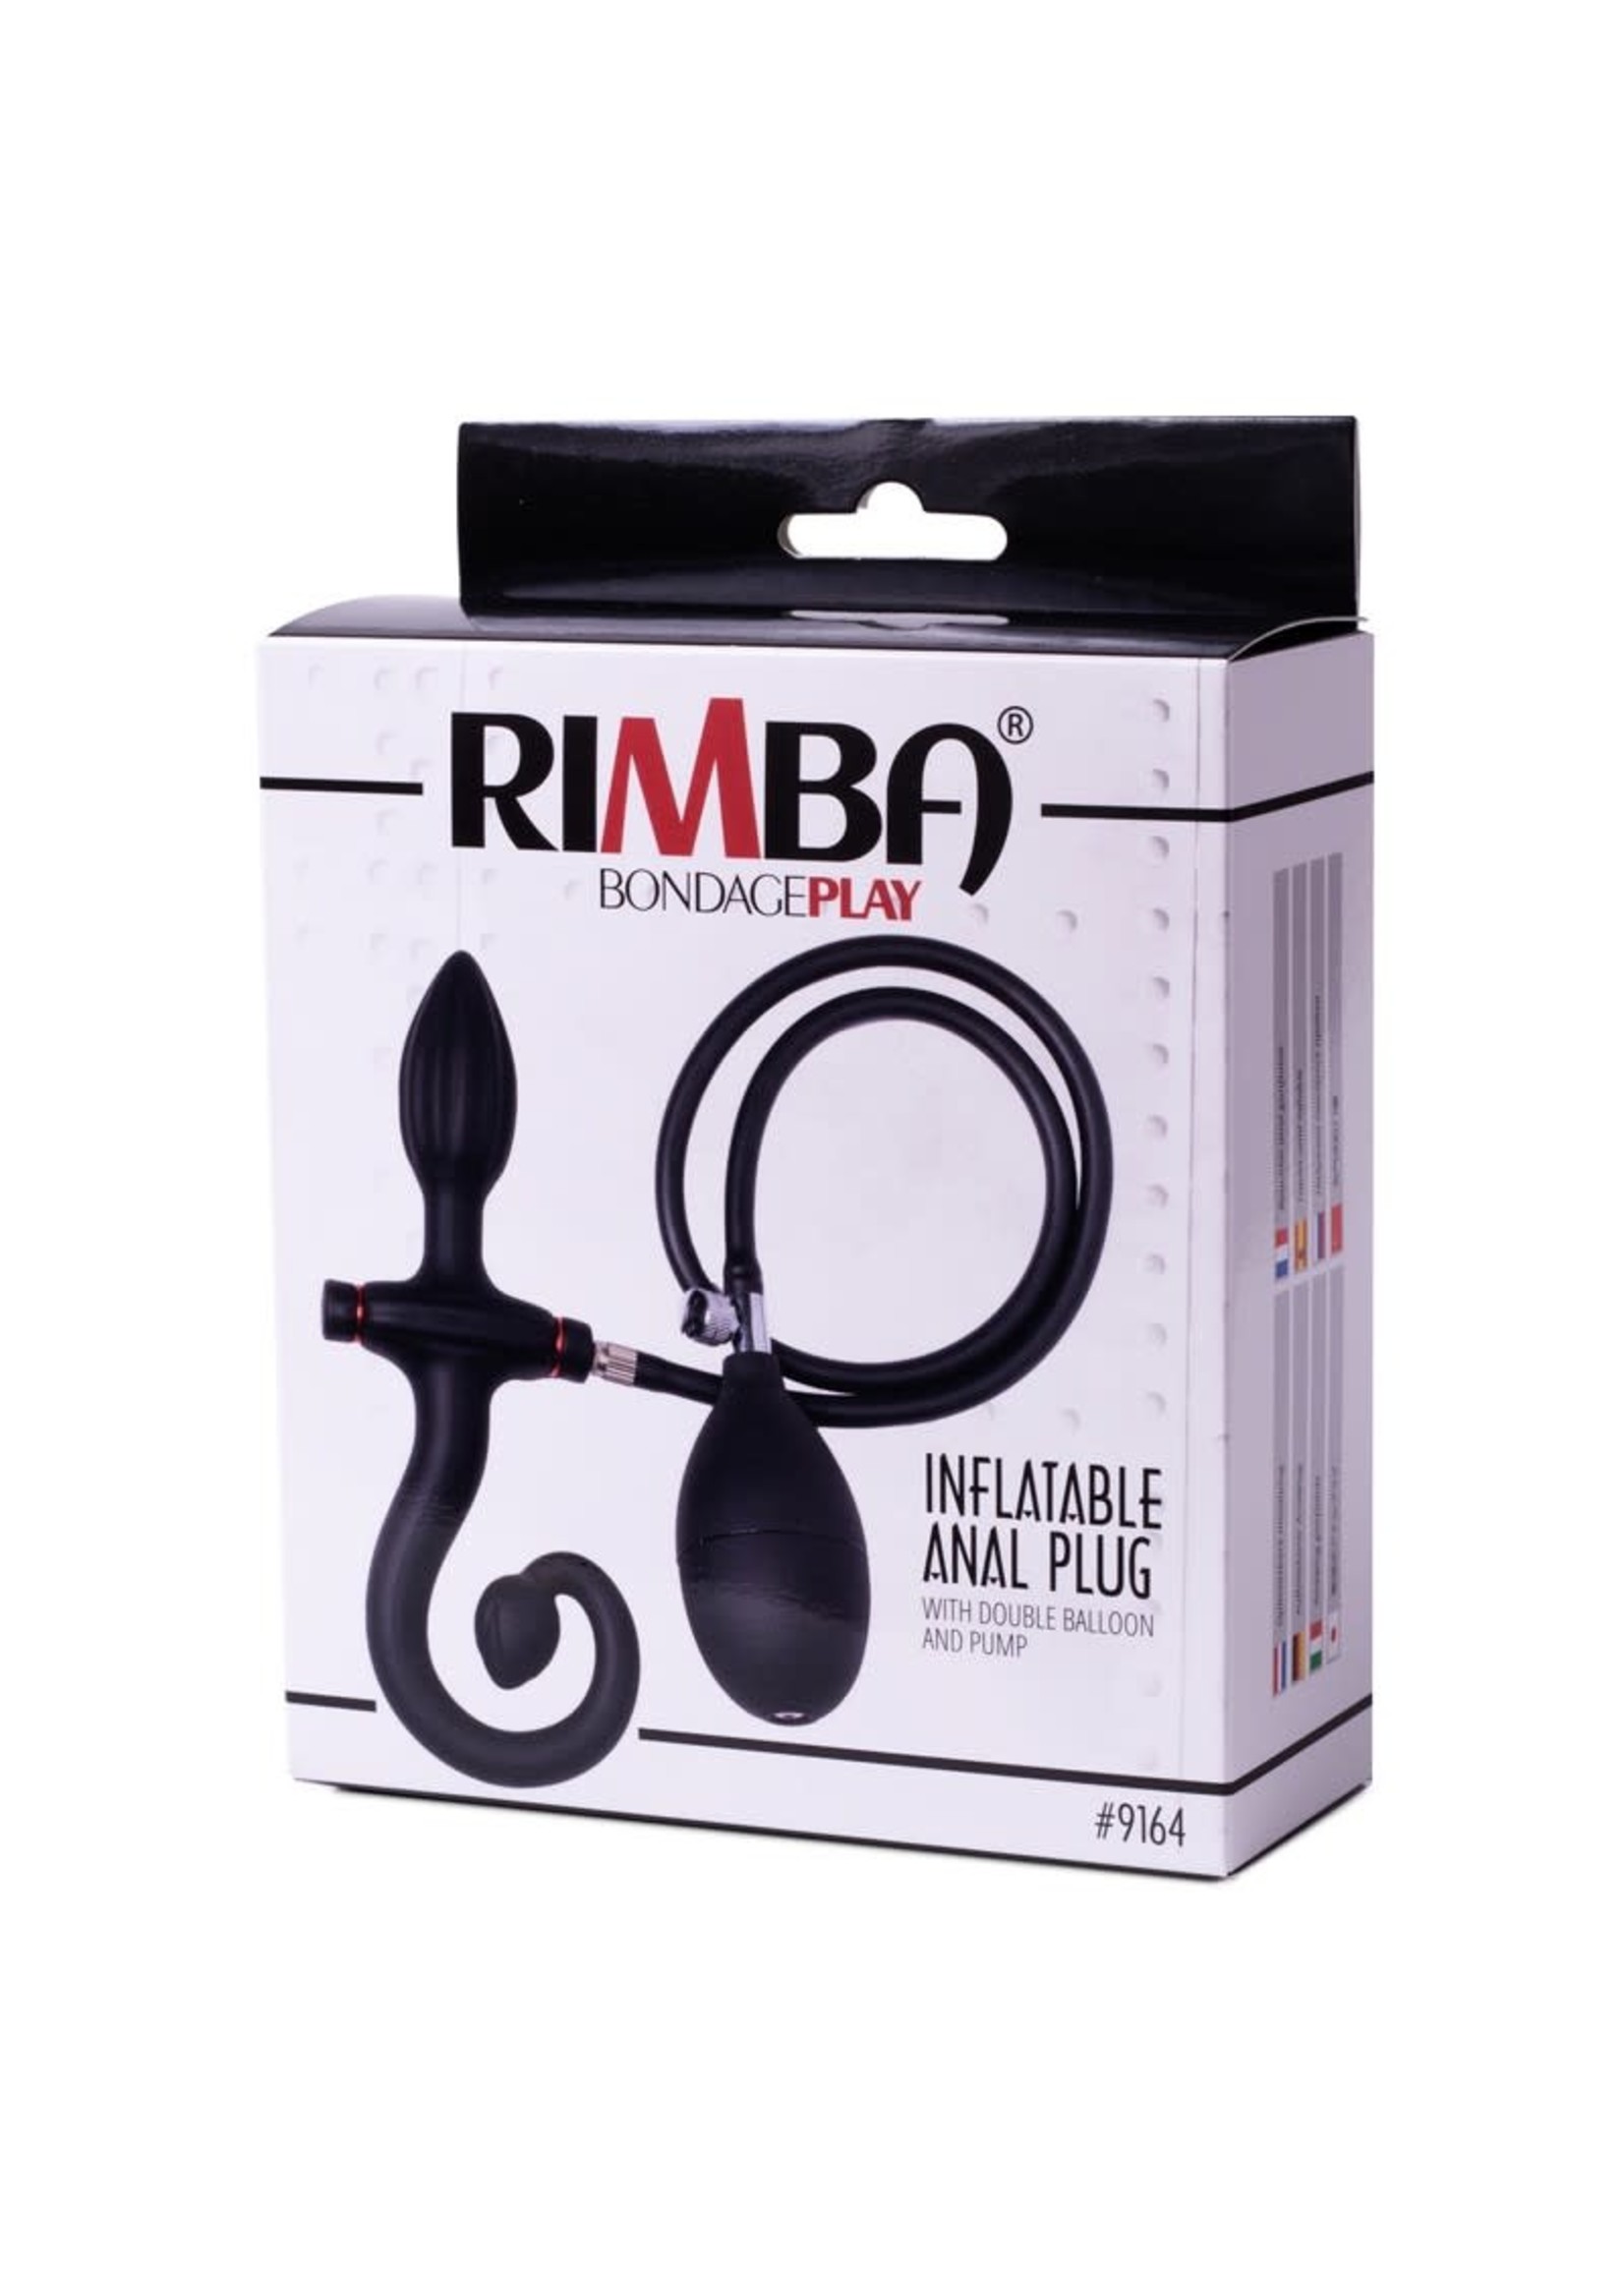 Rimba Inflatable anal plug with handle and pump